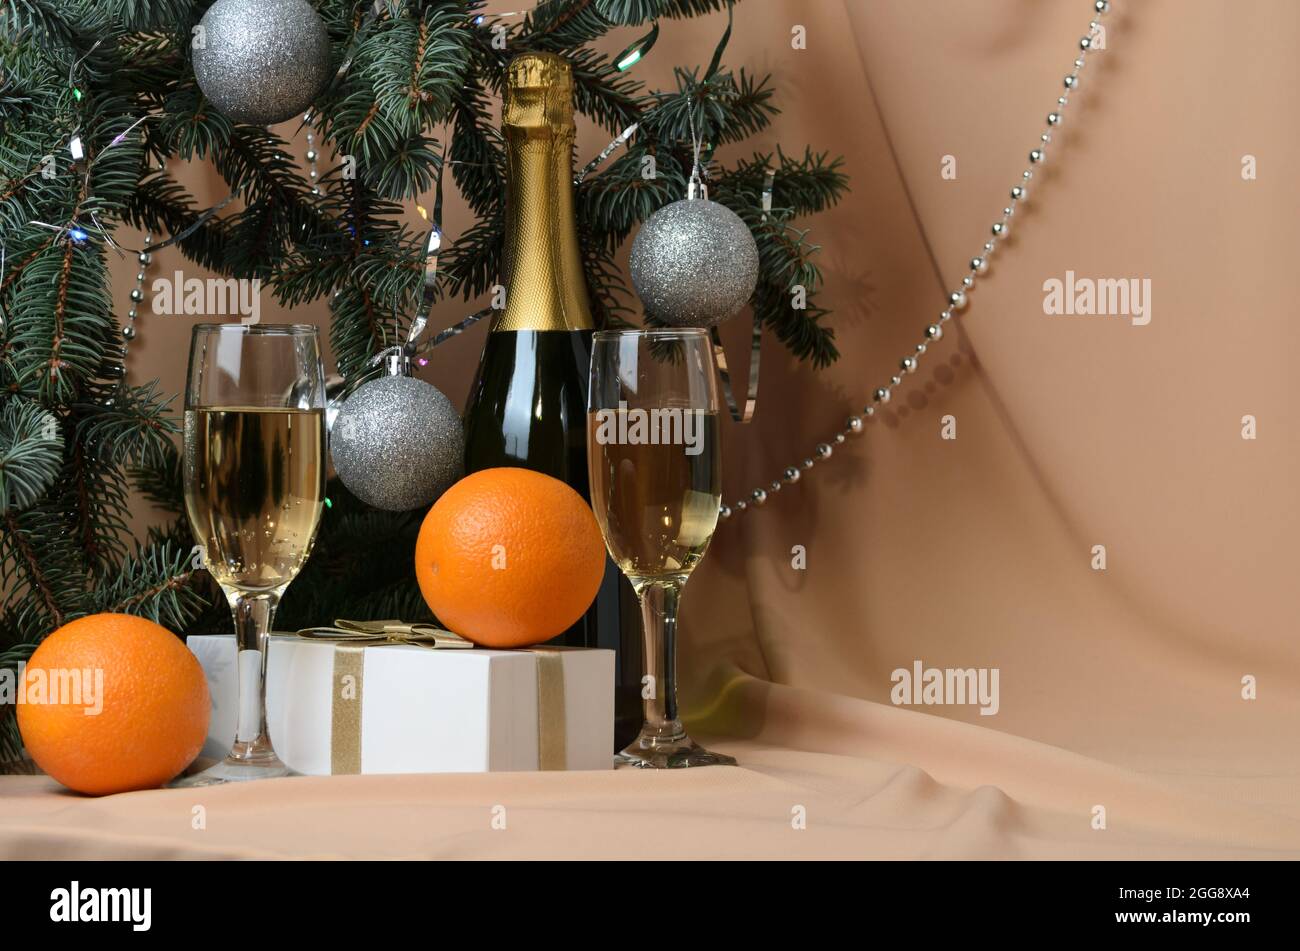 Eine Neujahrskomposition aus Zweigen eines Weihnachtsbaums, verziert mit silbernen Kugeln, einer Geschenkbox, Sektgläsern, Orangen auf einem Hintergrund Stockfoto